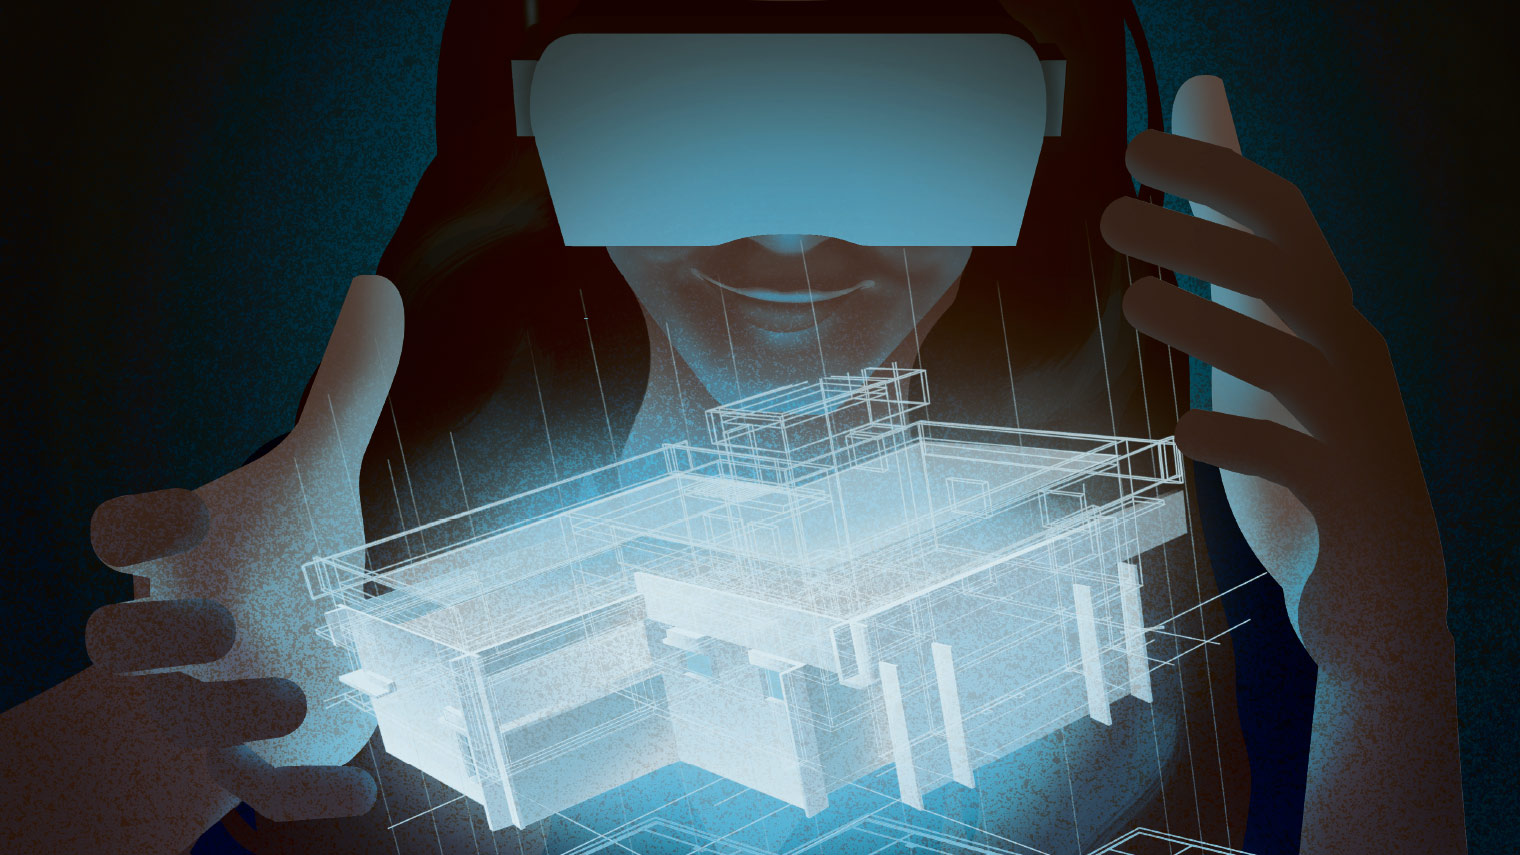 Vr объект. Технология ar (augmented reality) и VR (Virtual reality). Технологии виртуальной (VR) И дополненной (ar) реальности. Виртуальная и дополненная реальность (VR И ar). 3 Д моделирование дополненная реальность.